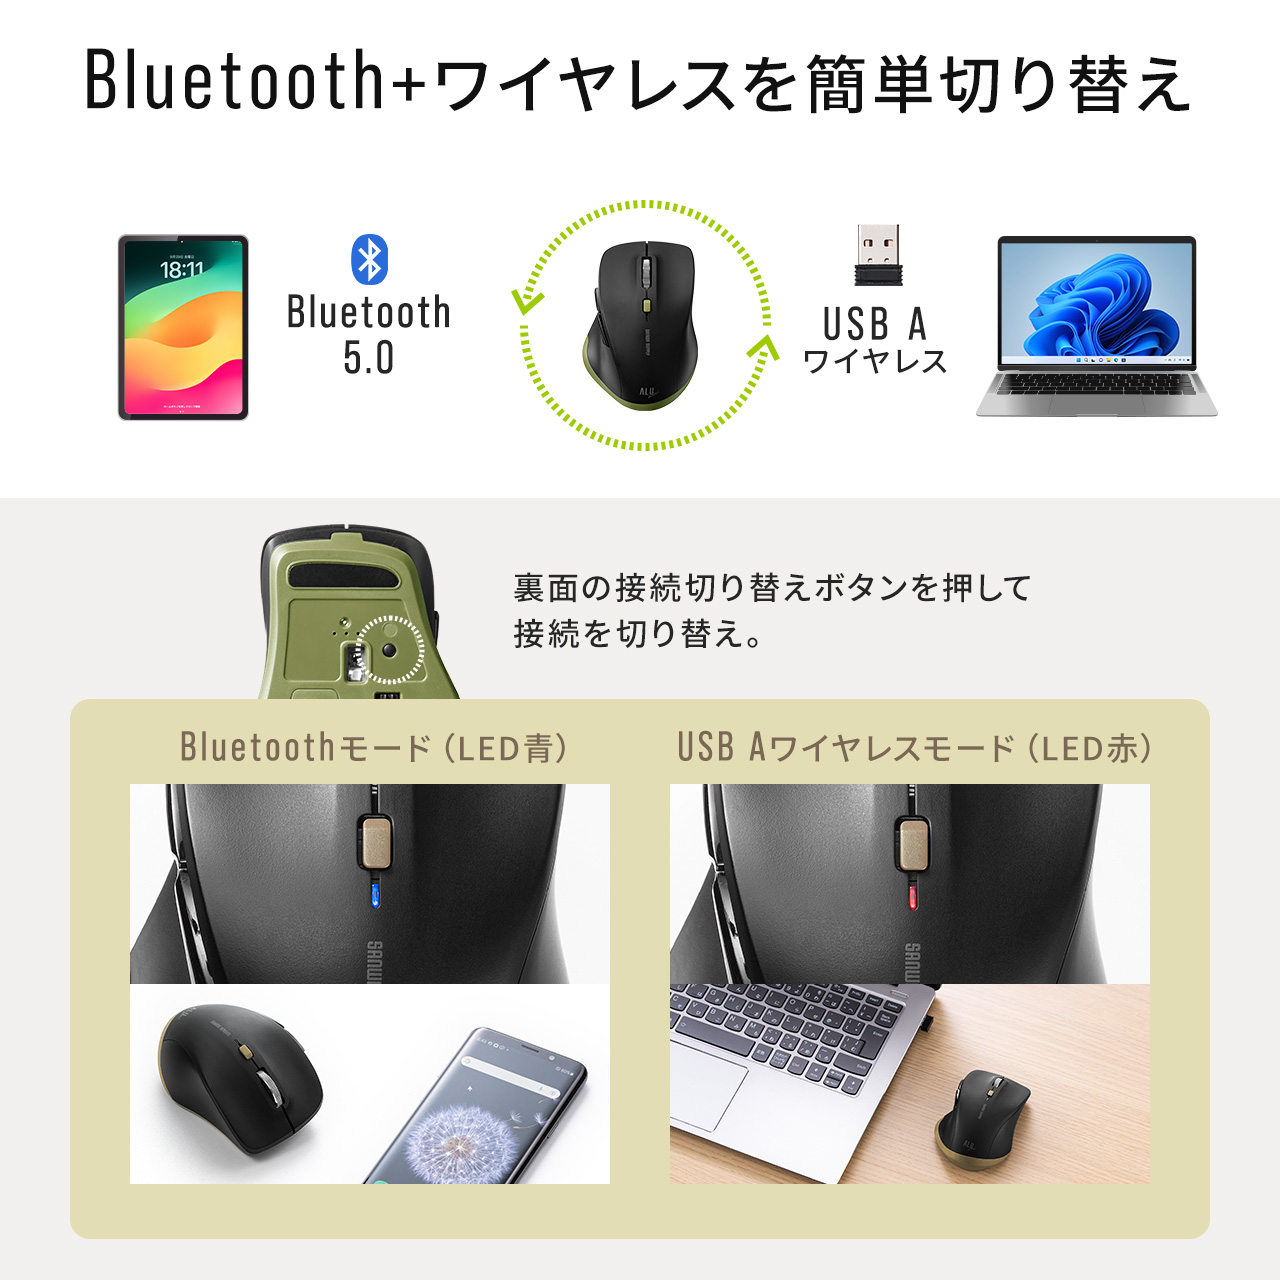 ワイヤレスマウス Bluetooth & USB A レシーバー 小型 静音 5ボタン 戻る進む アルミホイール 無線 2.4GHz ALUmini ブラック 400-MAWBT159BK2